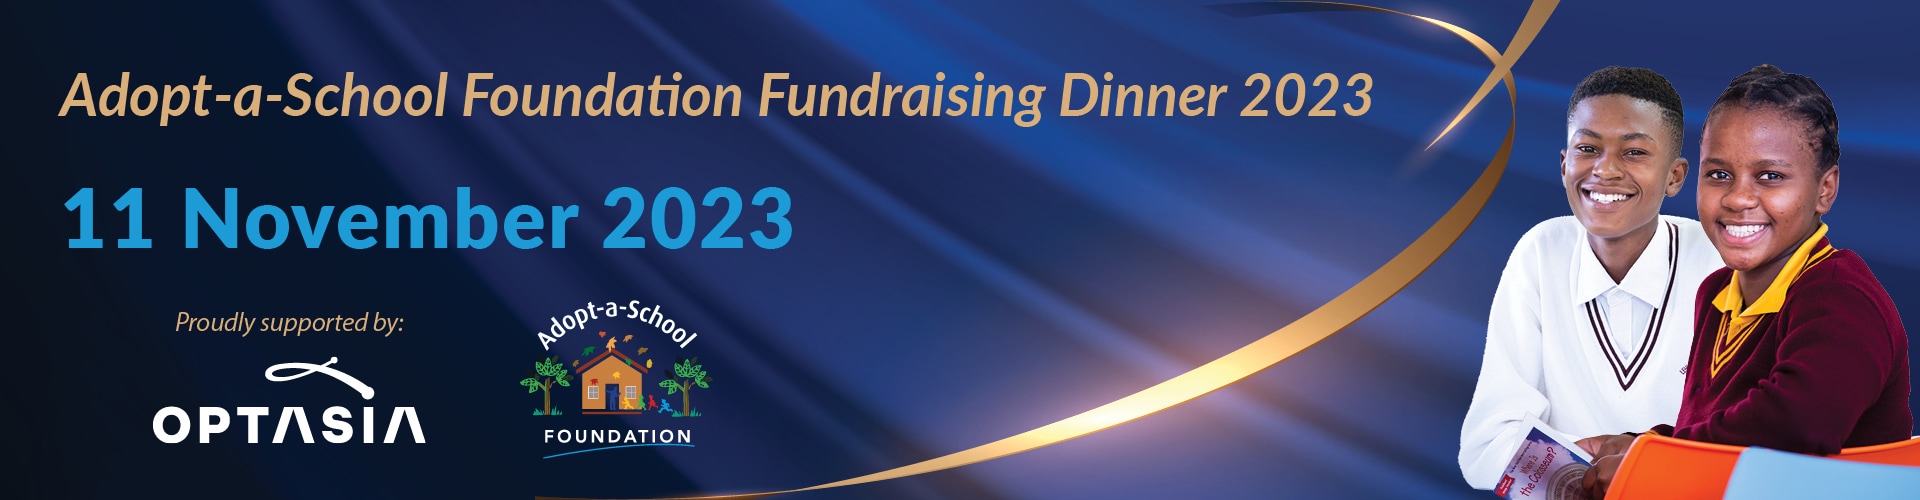 Fundraising Dinner 2023